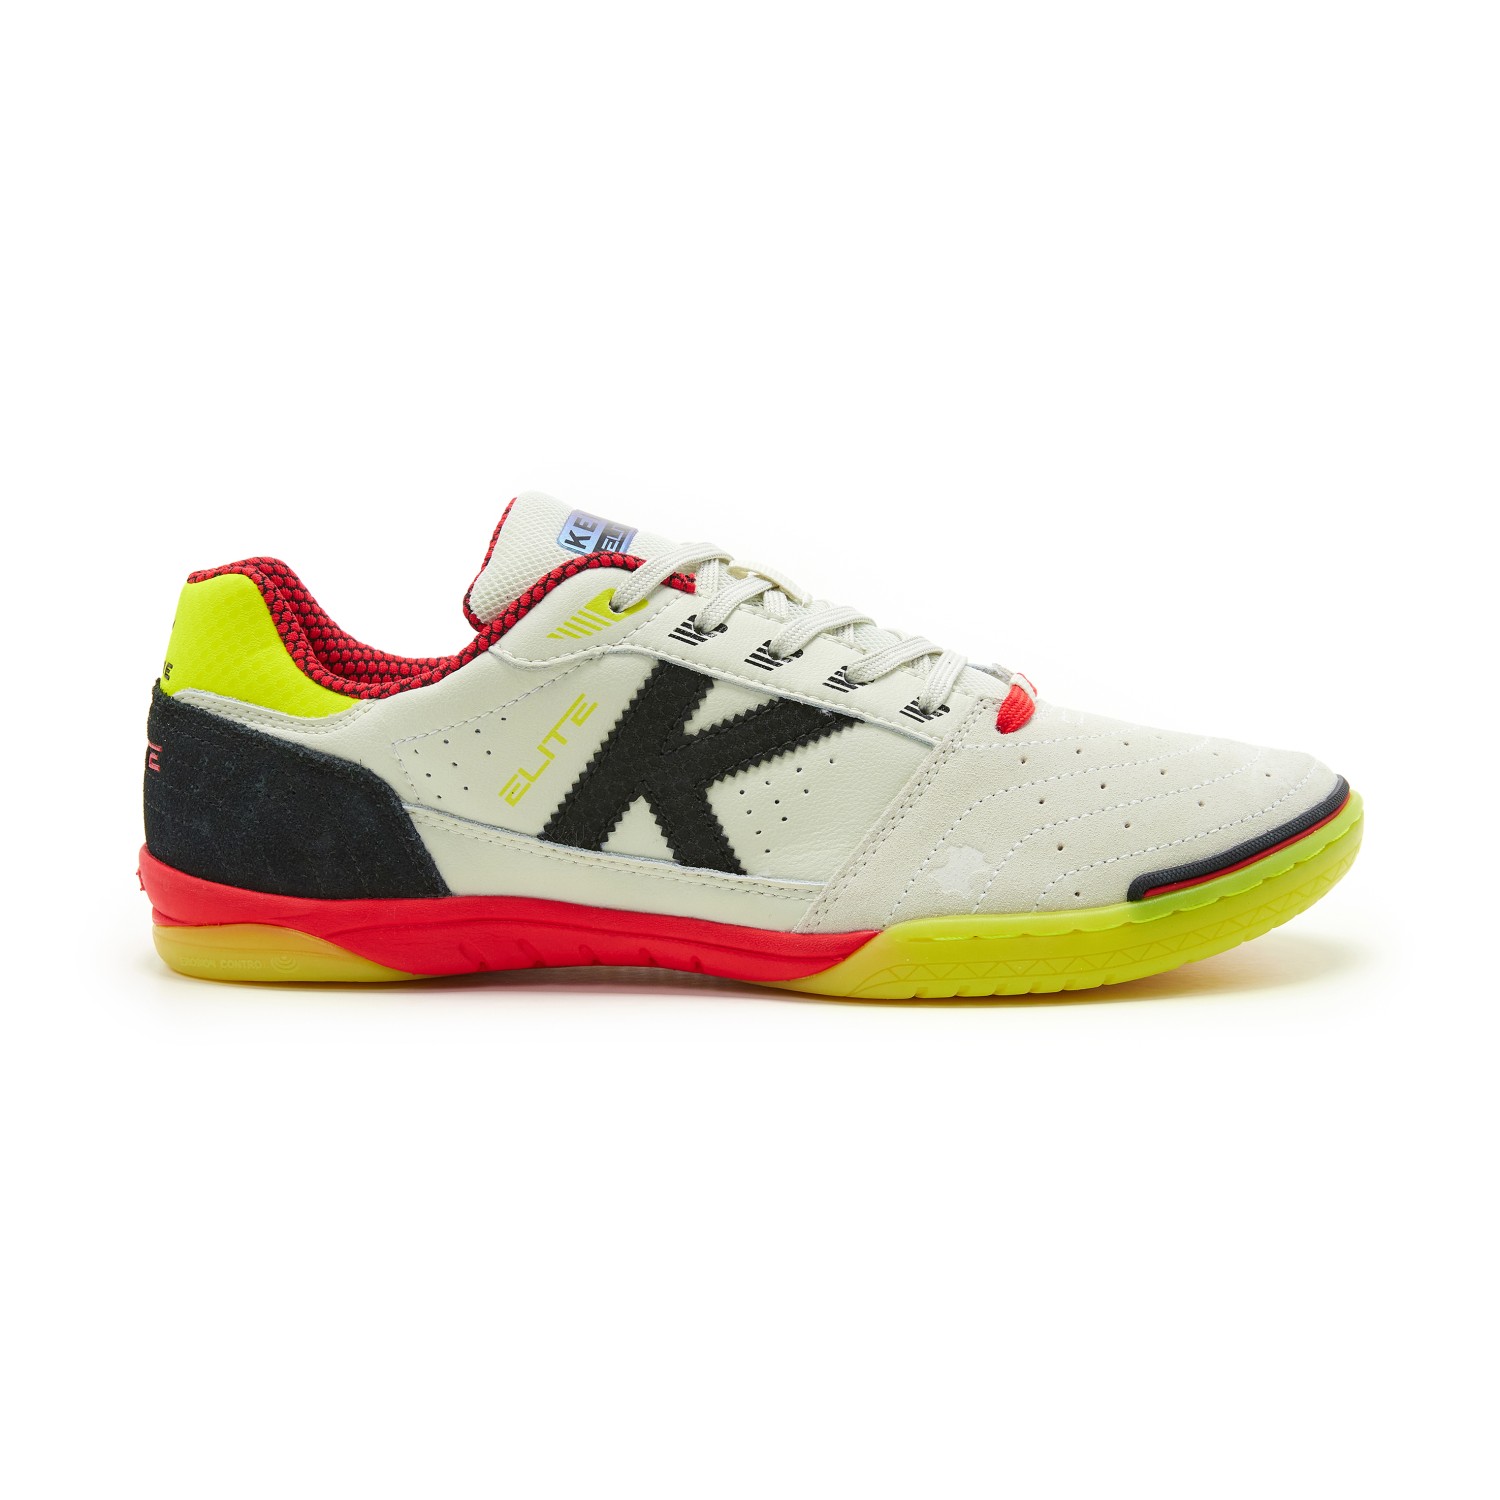 Compra zapatillas de fútbol sala para hombre - KELME Tienda Online